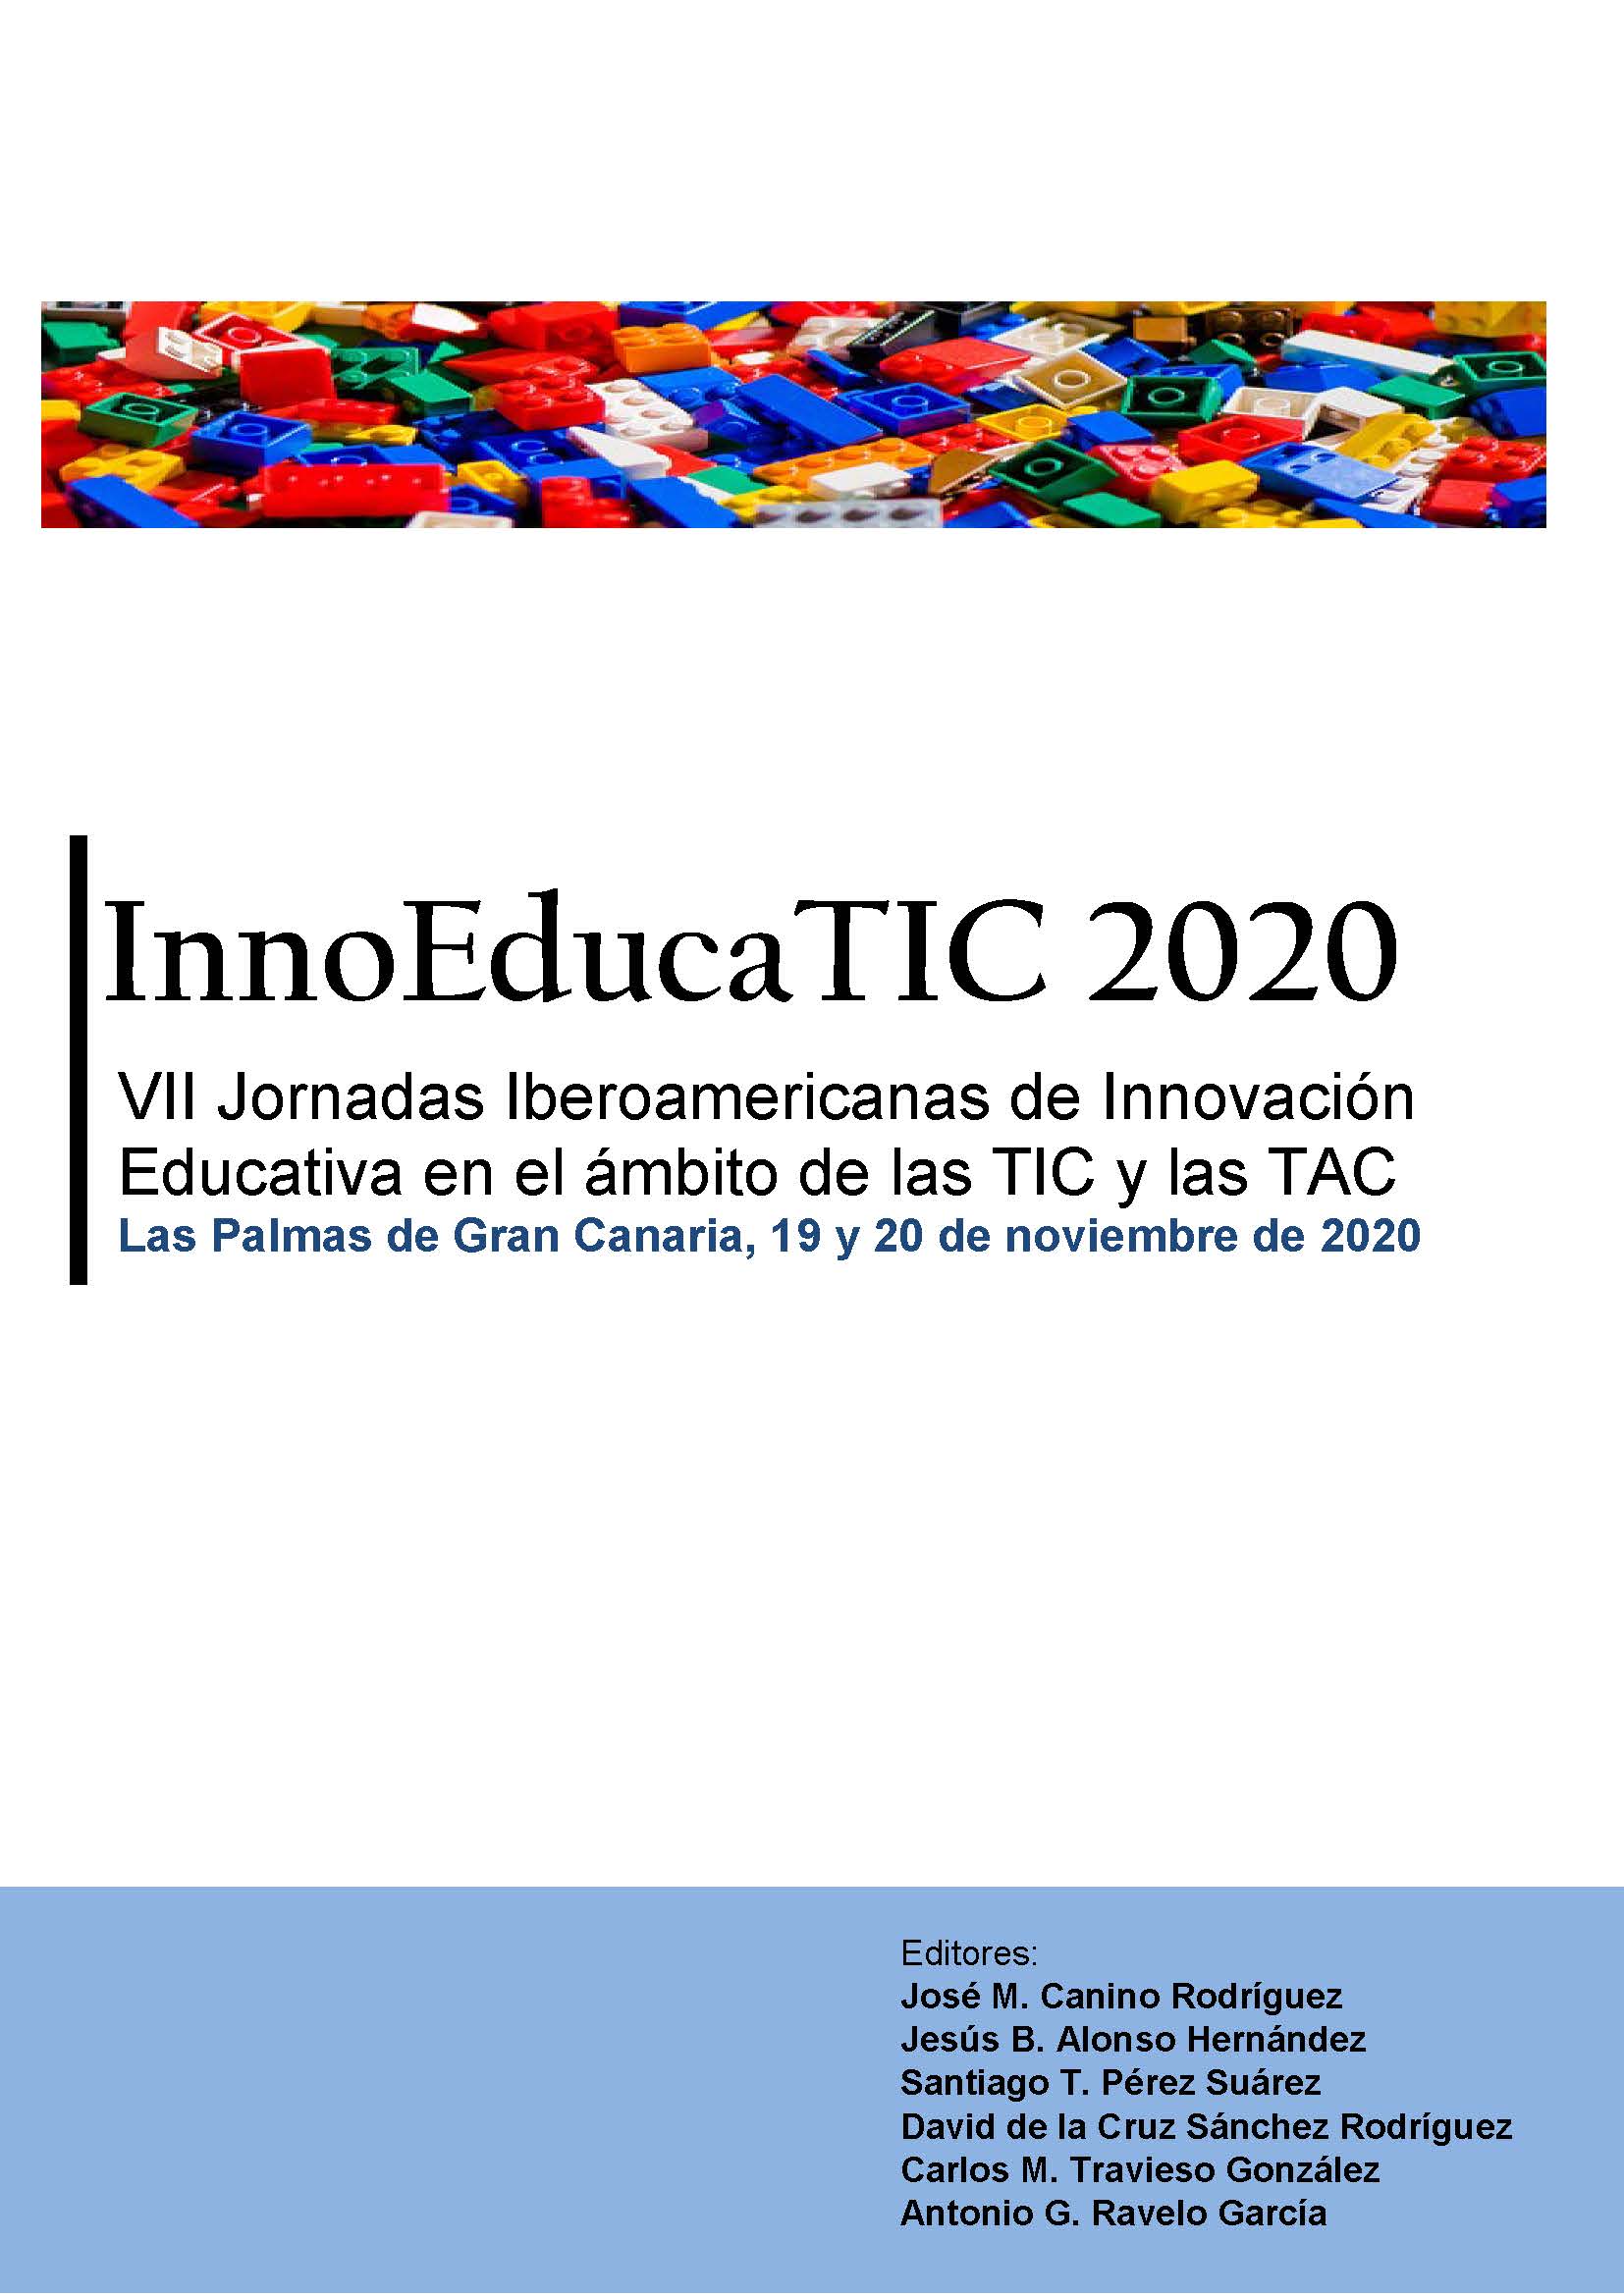 Imagen de portada del libro VII Jornadas Iberoamericanas de Innovación Educativa en el ámbito de las TIC y las TAC